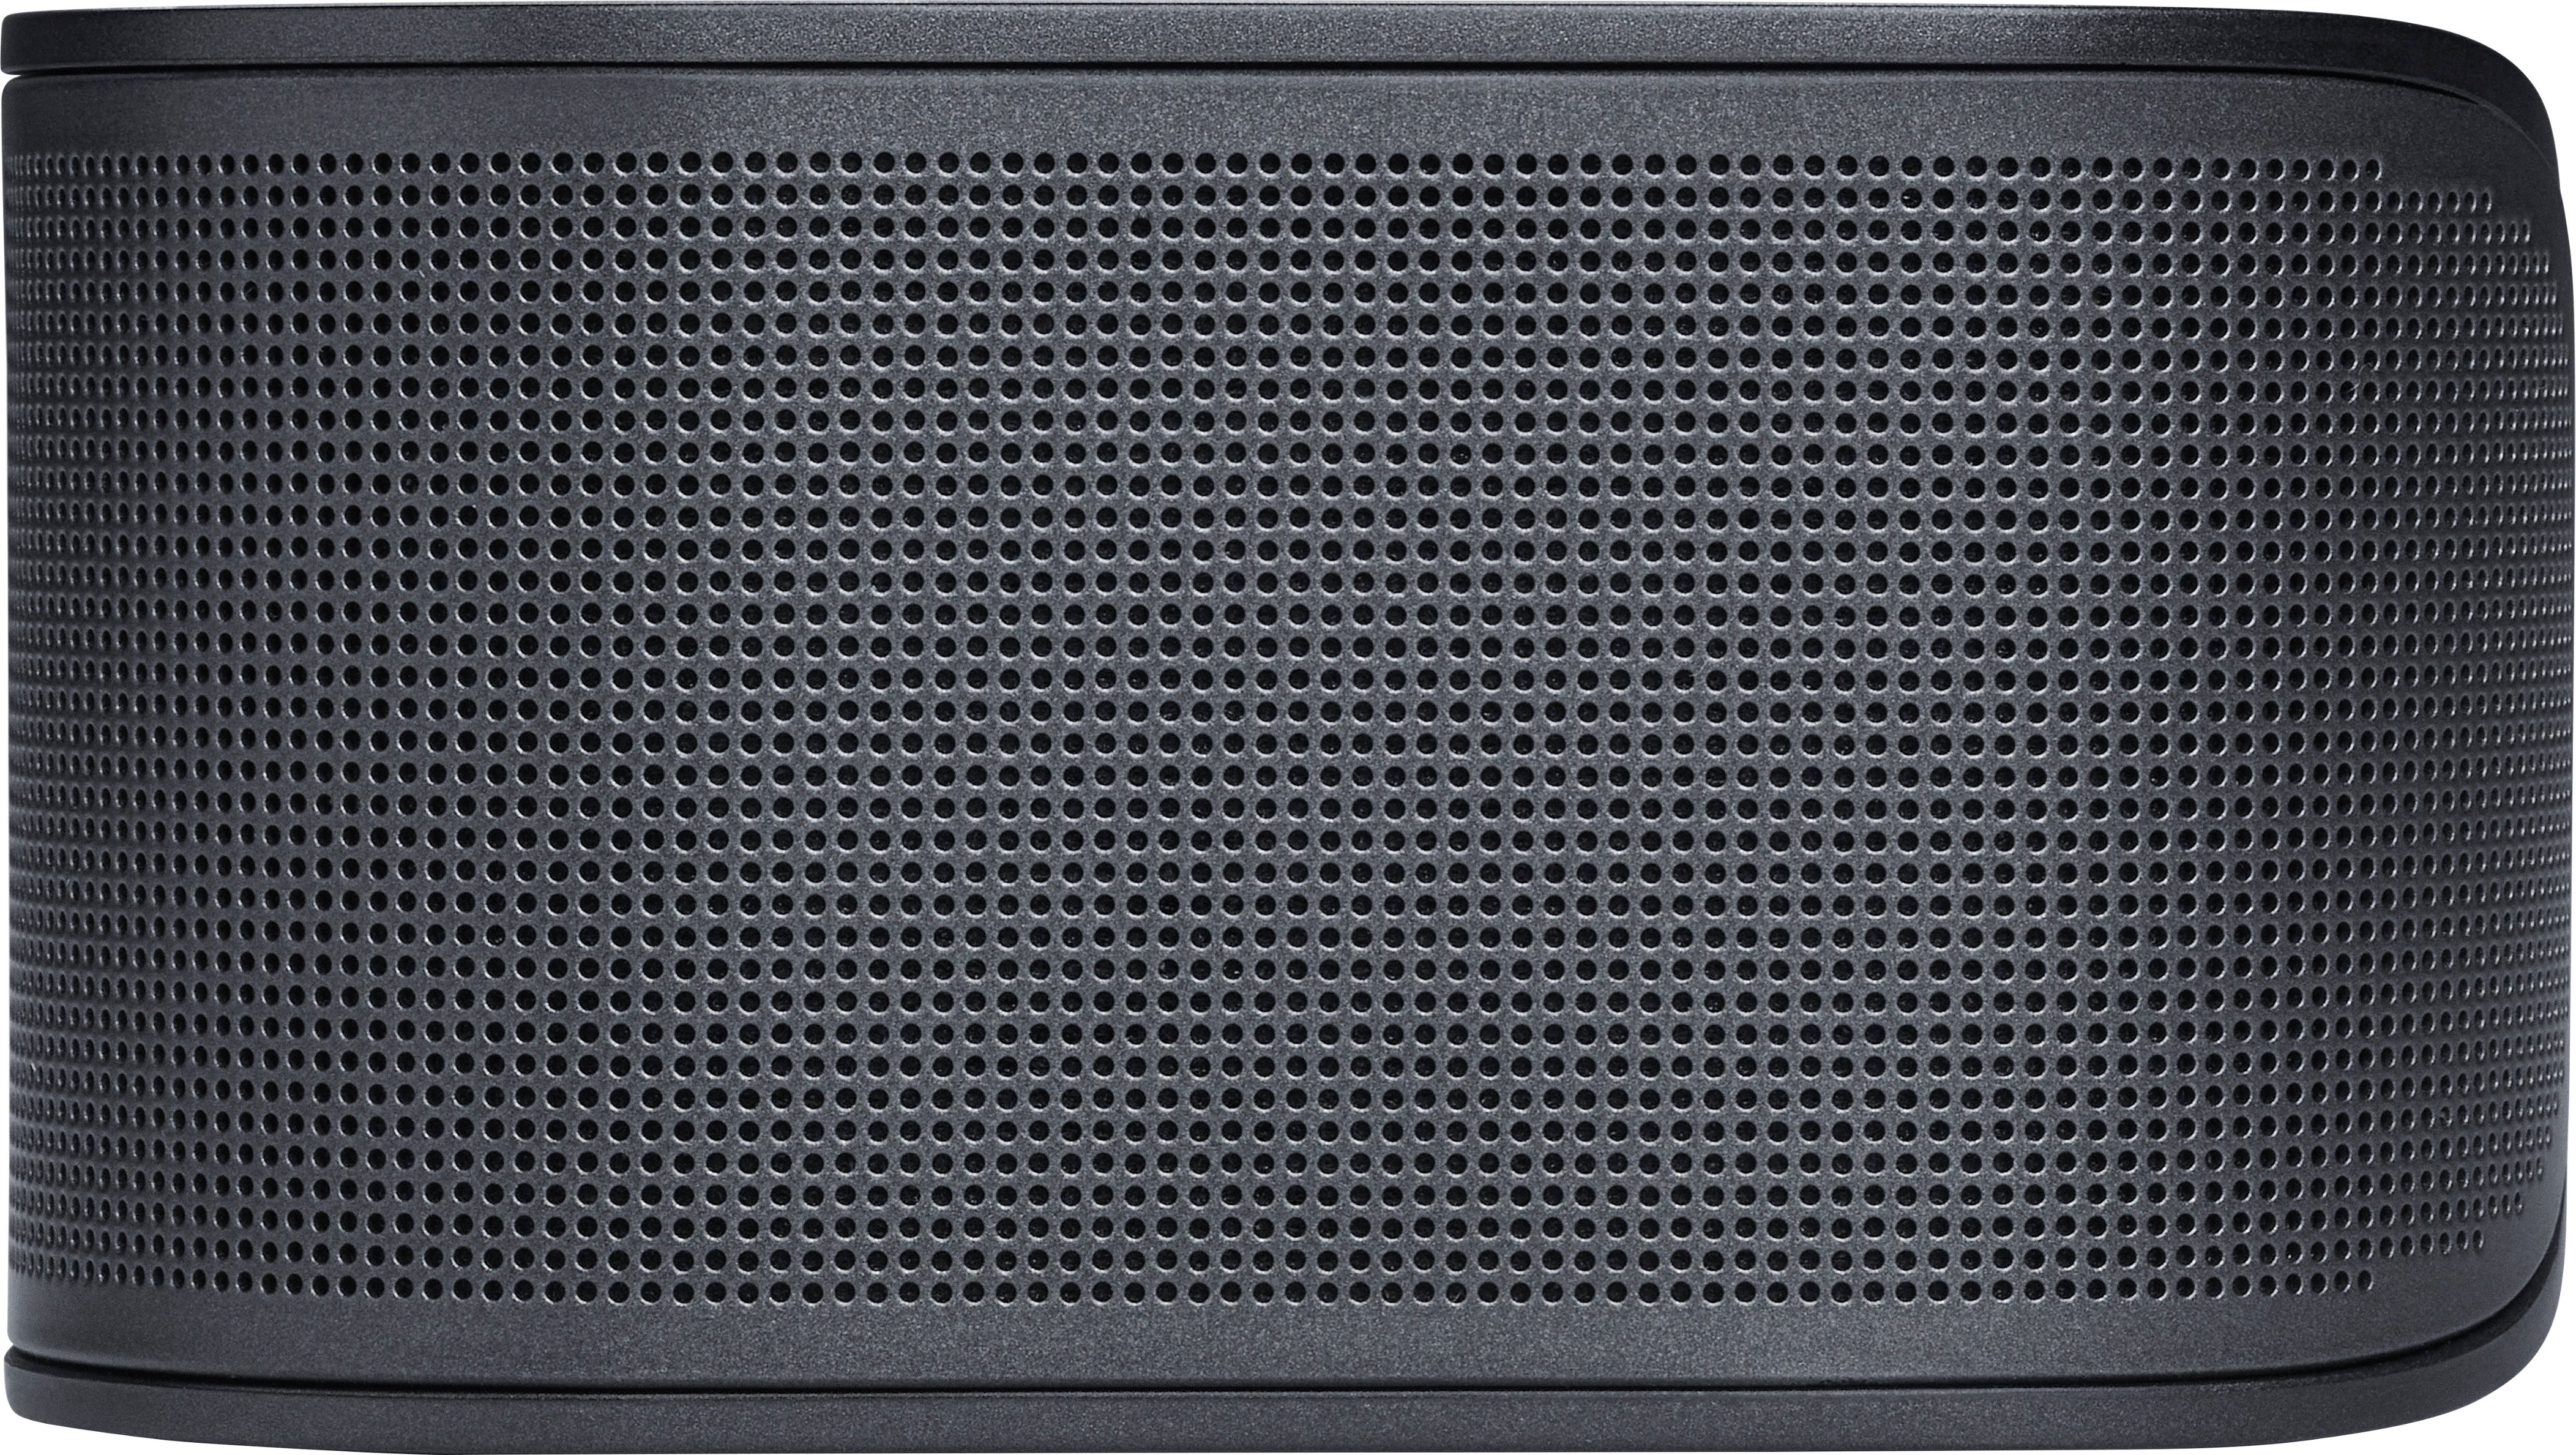 JBL BAR 500 5.1ch Buy Soundbar and Multibeam with JBLBAR500PROBLKAM Dolby - Black Atmos Best